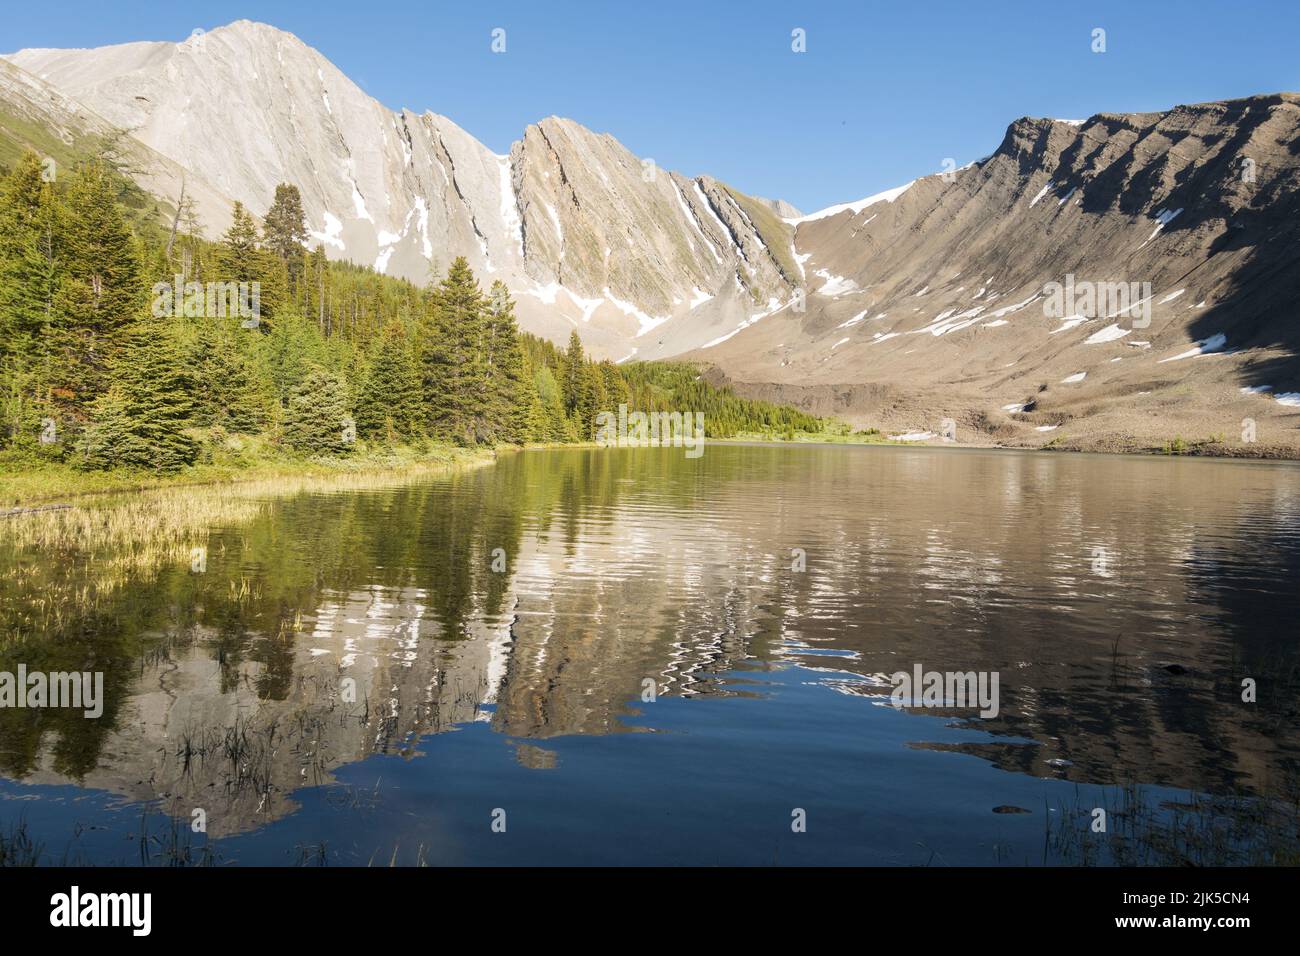 Der Berggipfel spiegelt sich in der ruhigen Landschaft des Regenbogensees mit blauem Wasser wider. Sommerwandern im Eastern Range des Banff National Park, Canadian Rockies Stockfoto